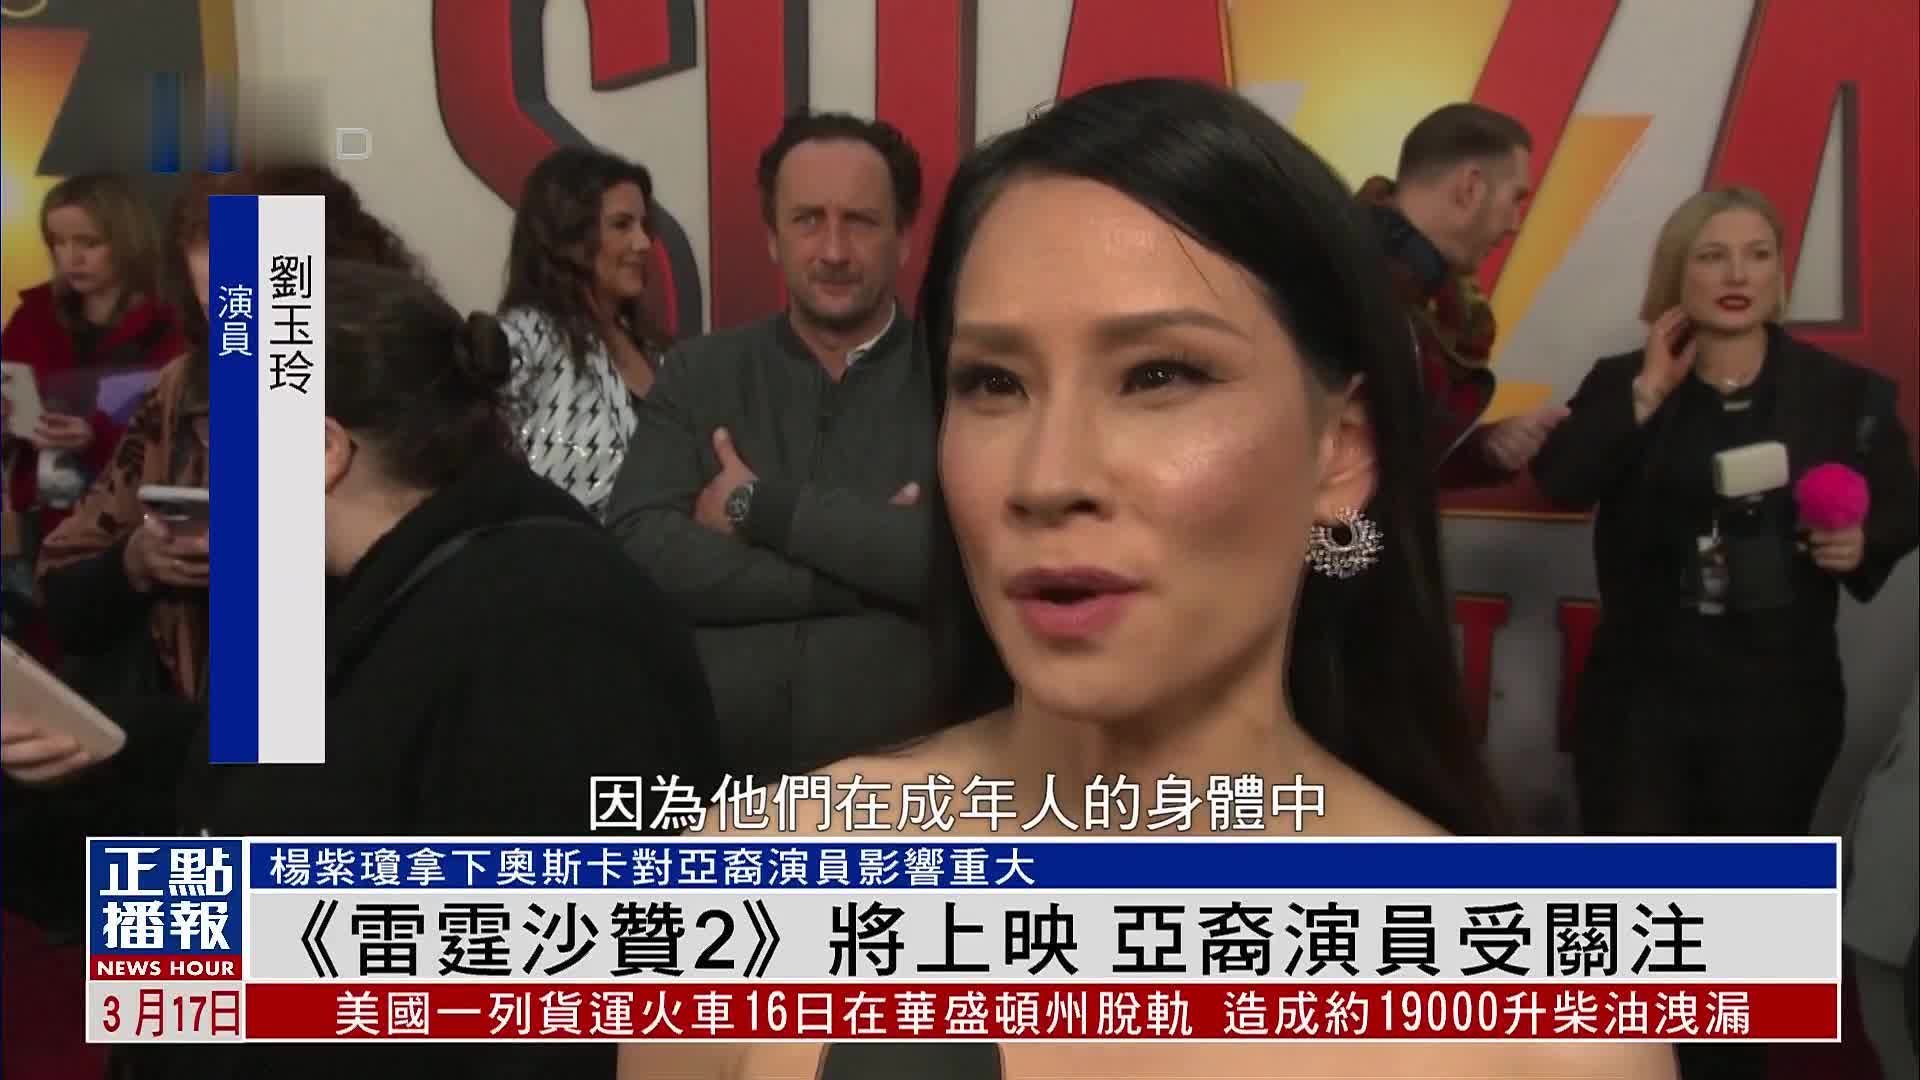 《雷霆沙赞2》将上映 亚裔演员受关注